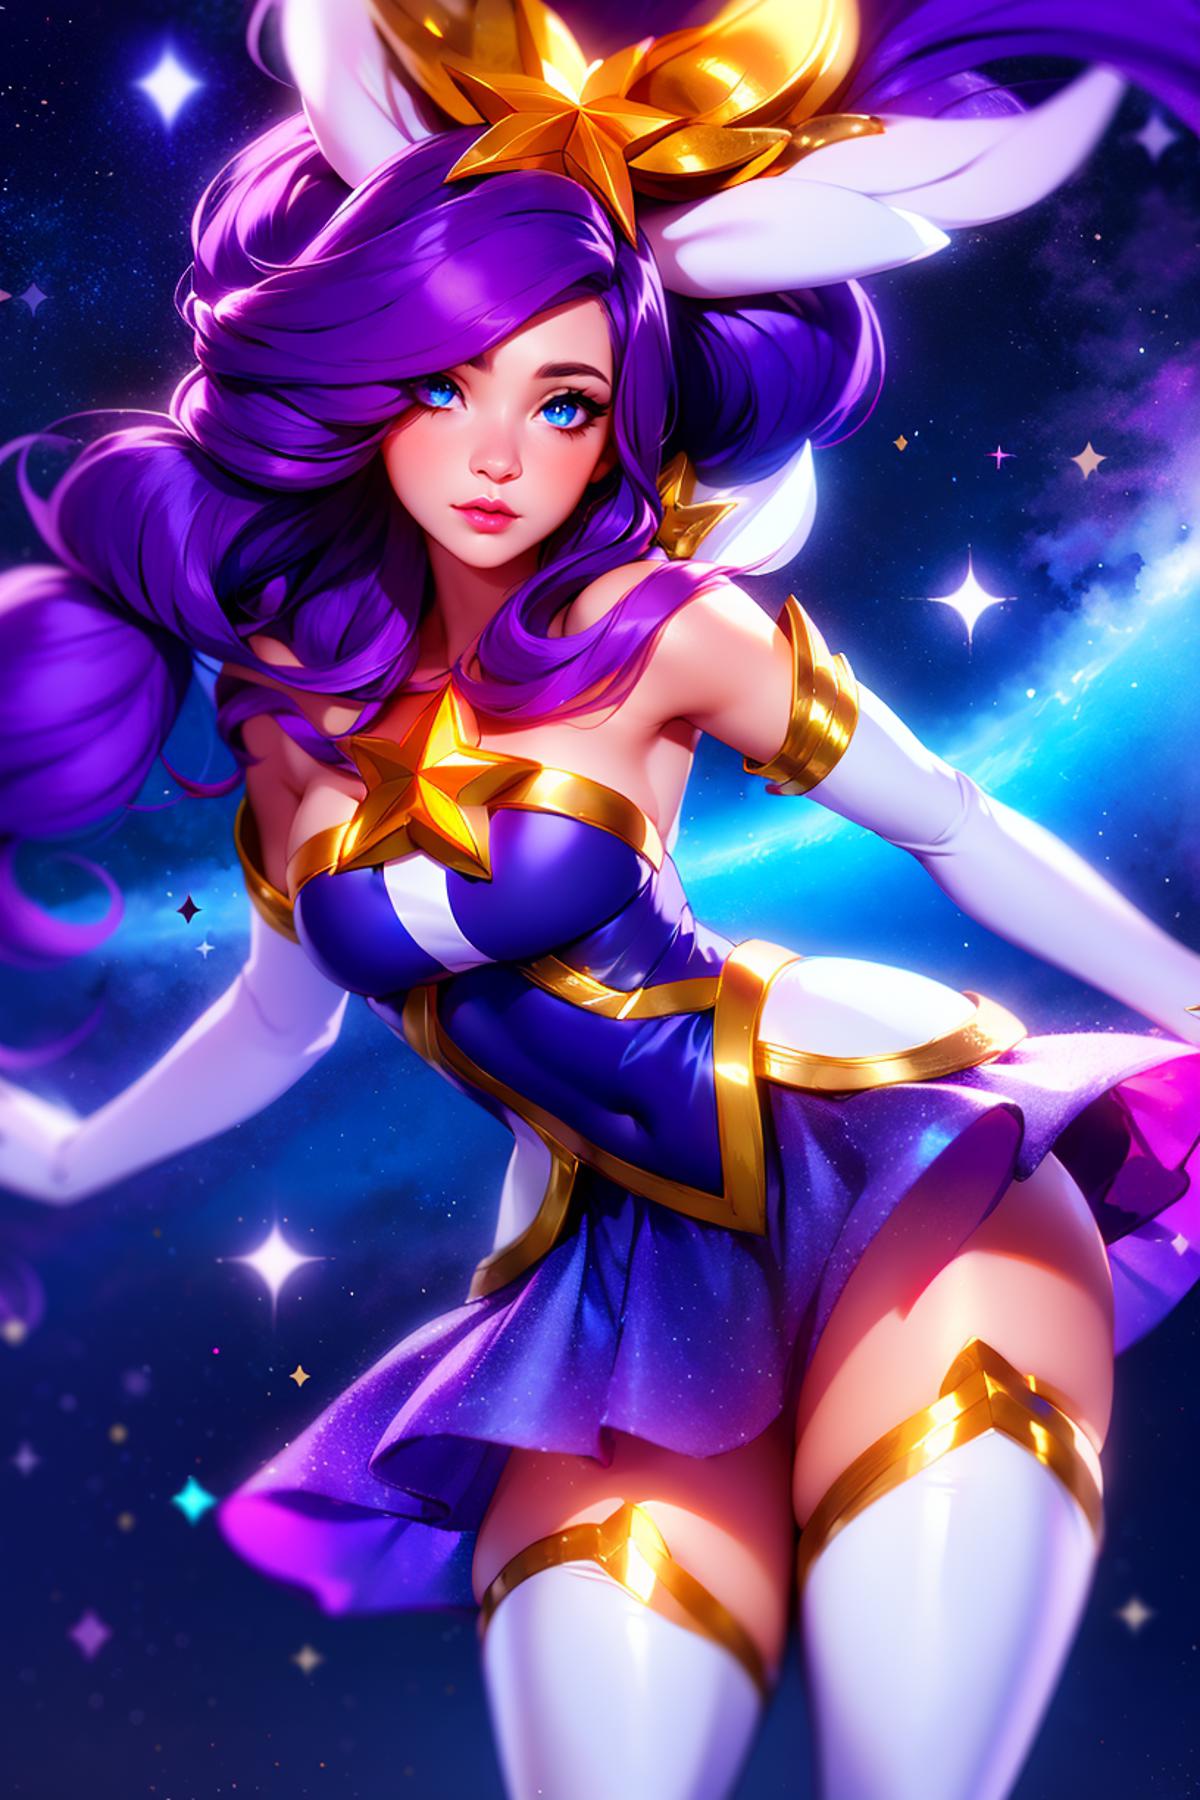 Star Guardian-Janna (League of Legends) image by Sophorium